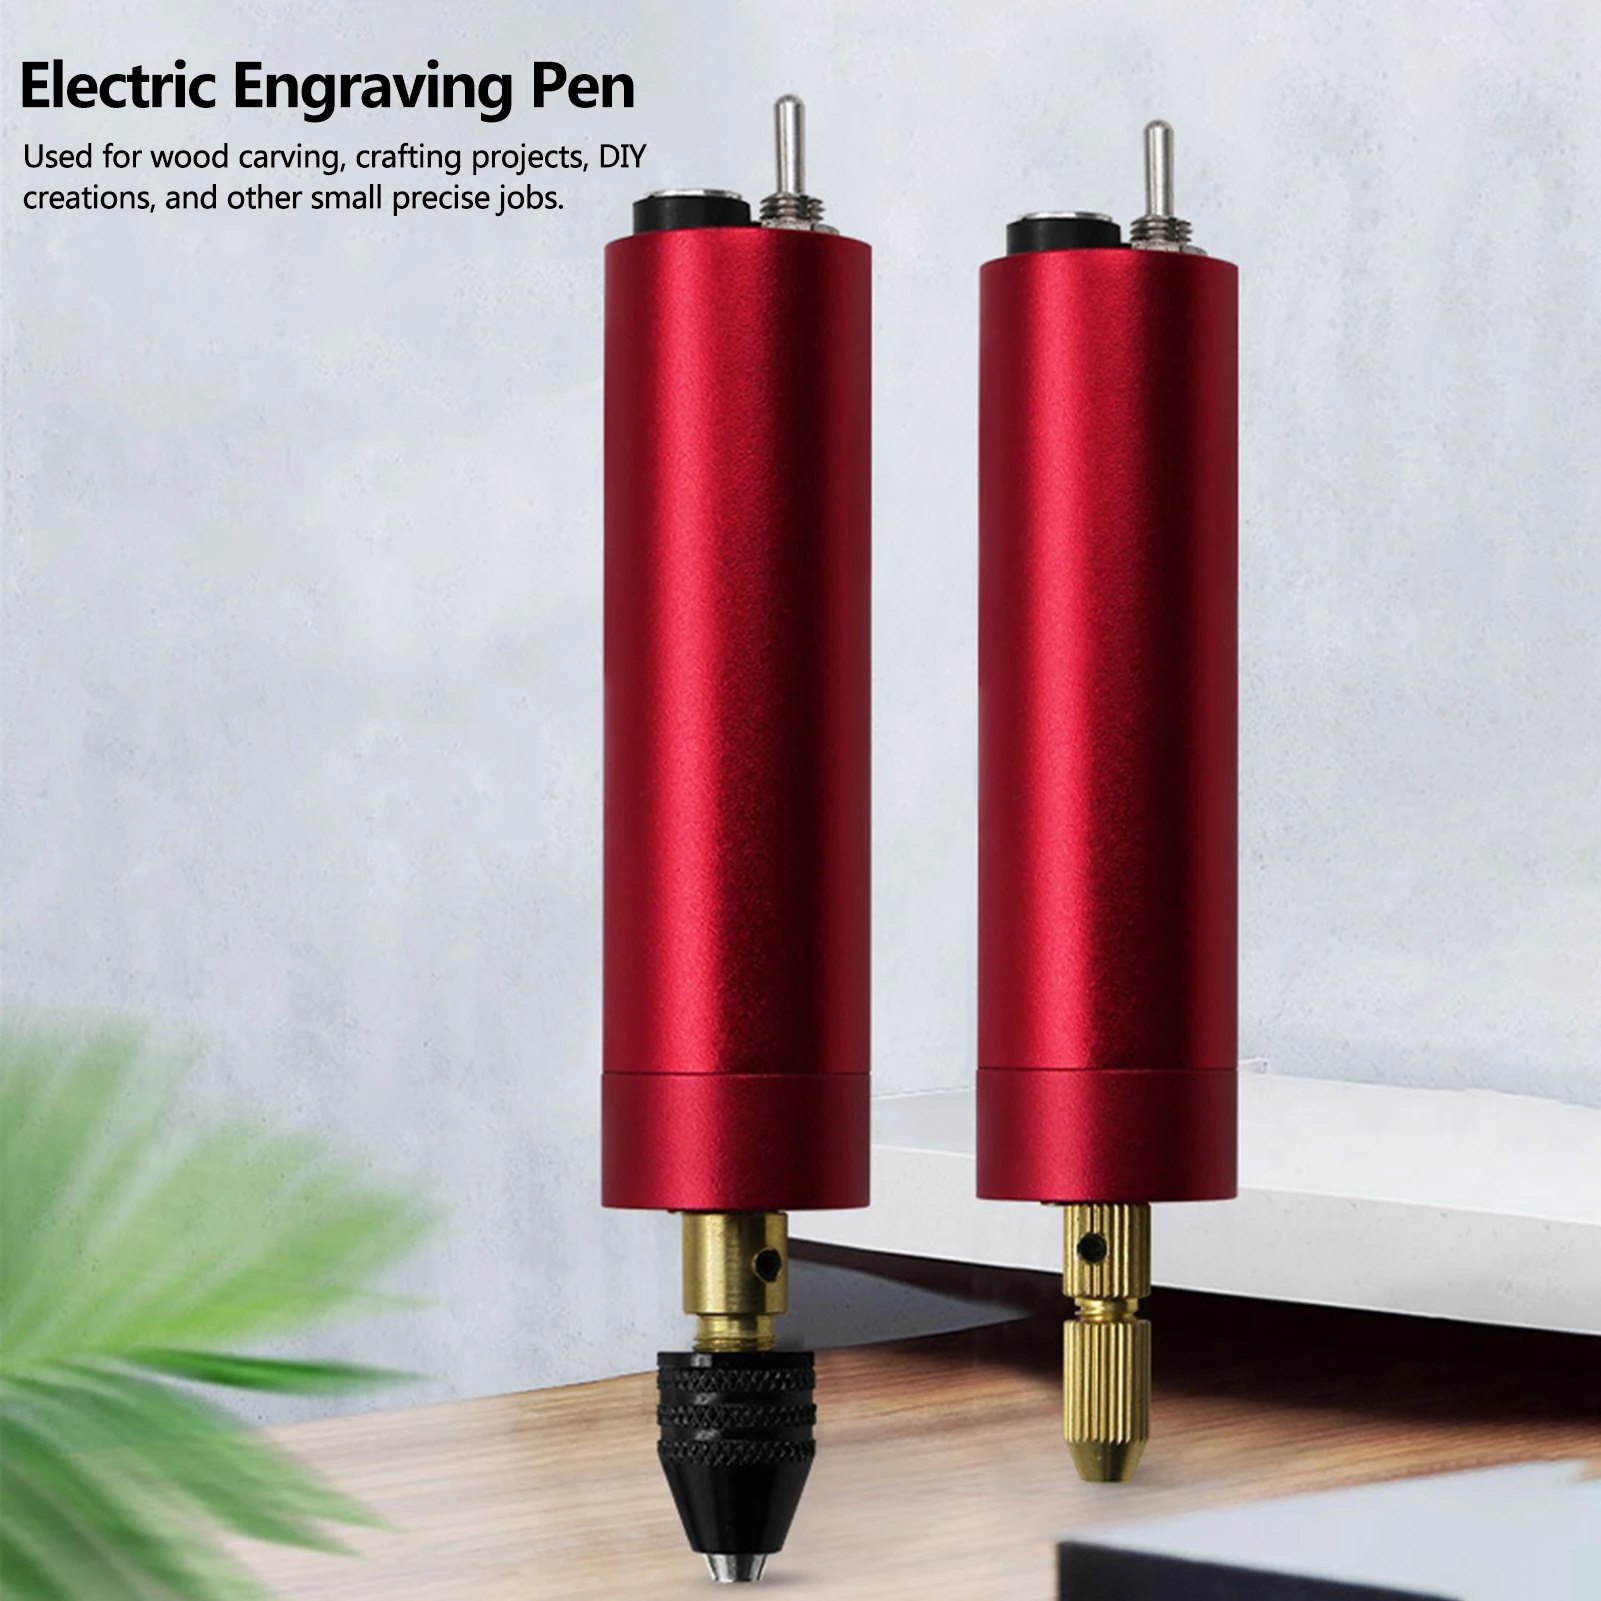 

Красная USB мини электрическая гравировальная ручка, используется для гравировки резьбы по дереву, ремесленных проектов, творчества «сделай...